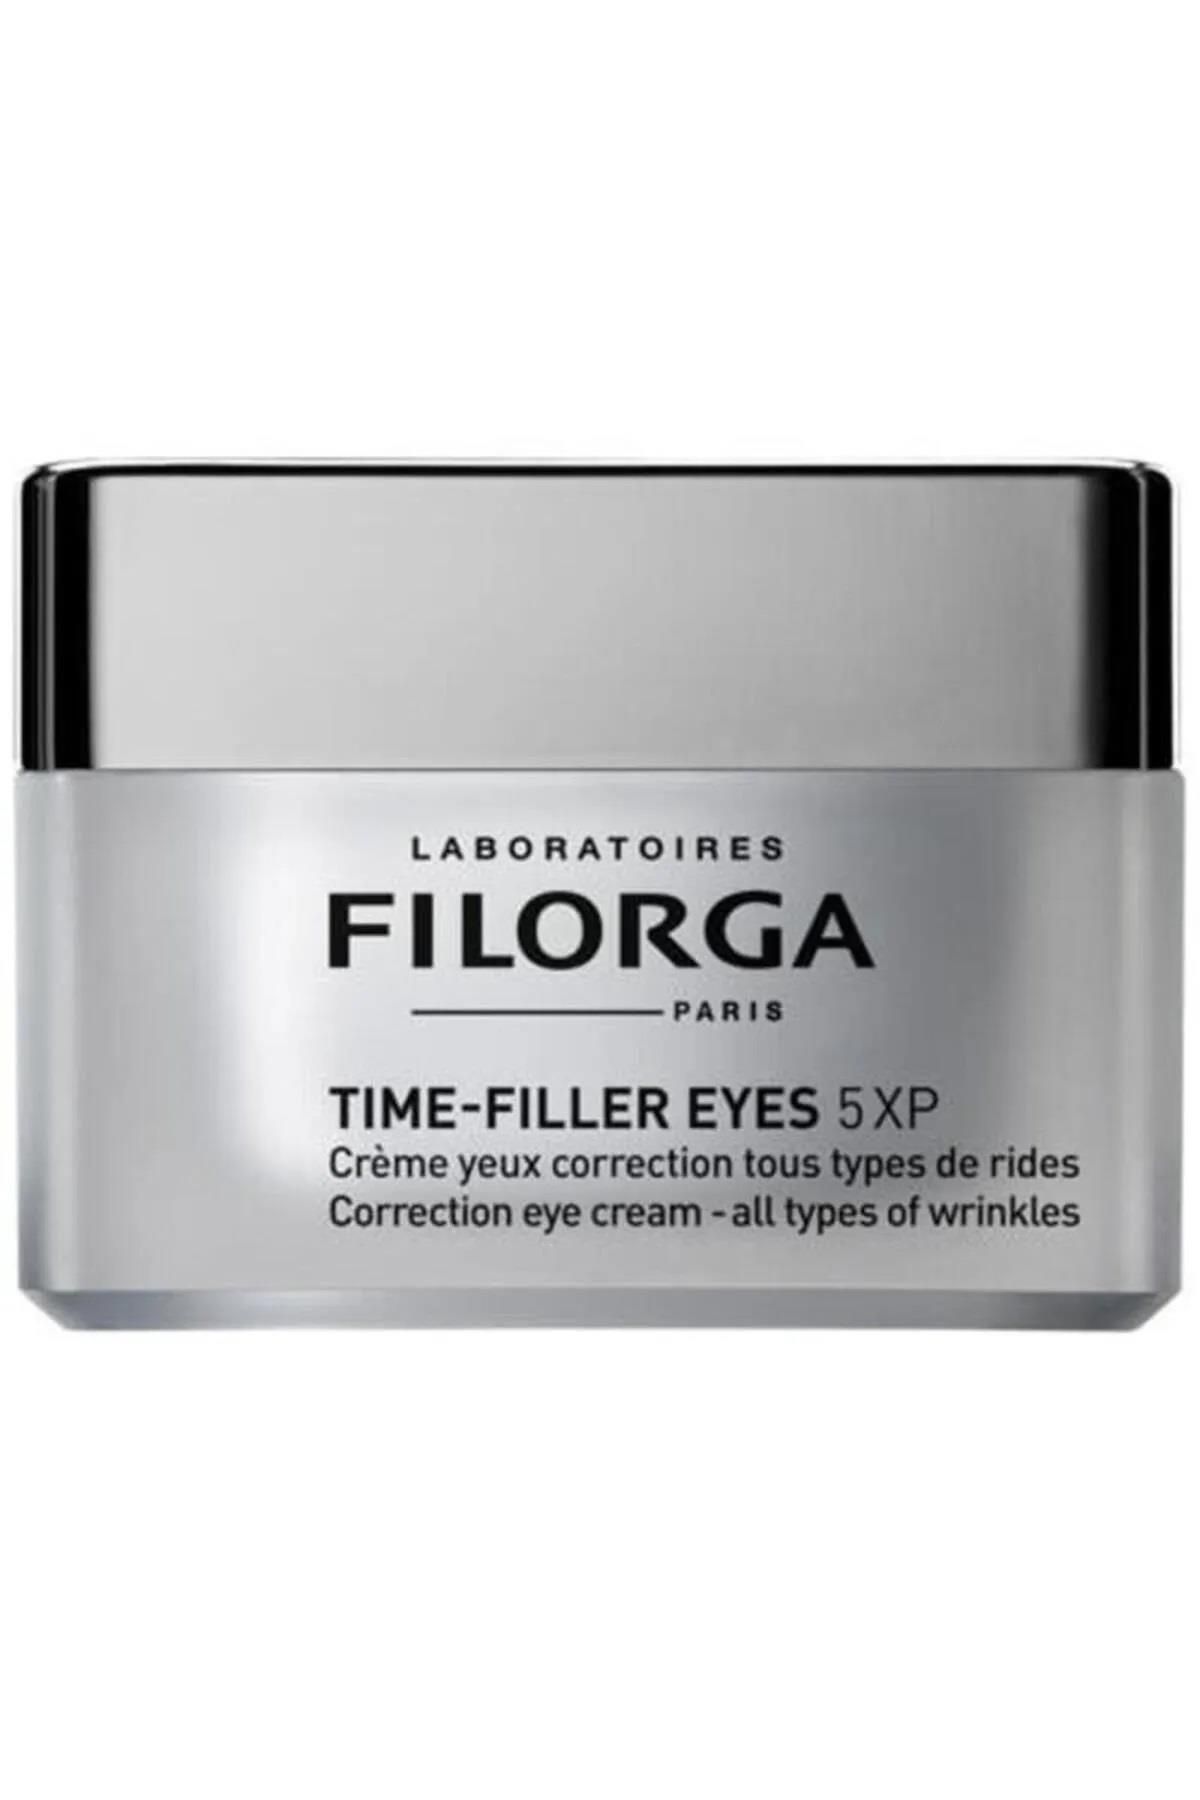 Filorga Time Filler Eyes 5xp 15 ml 5555555